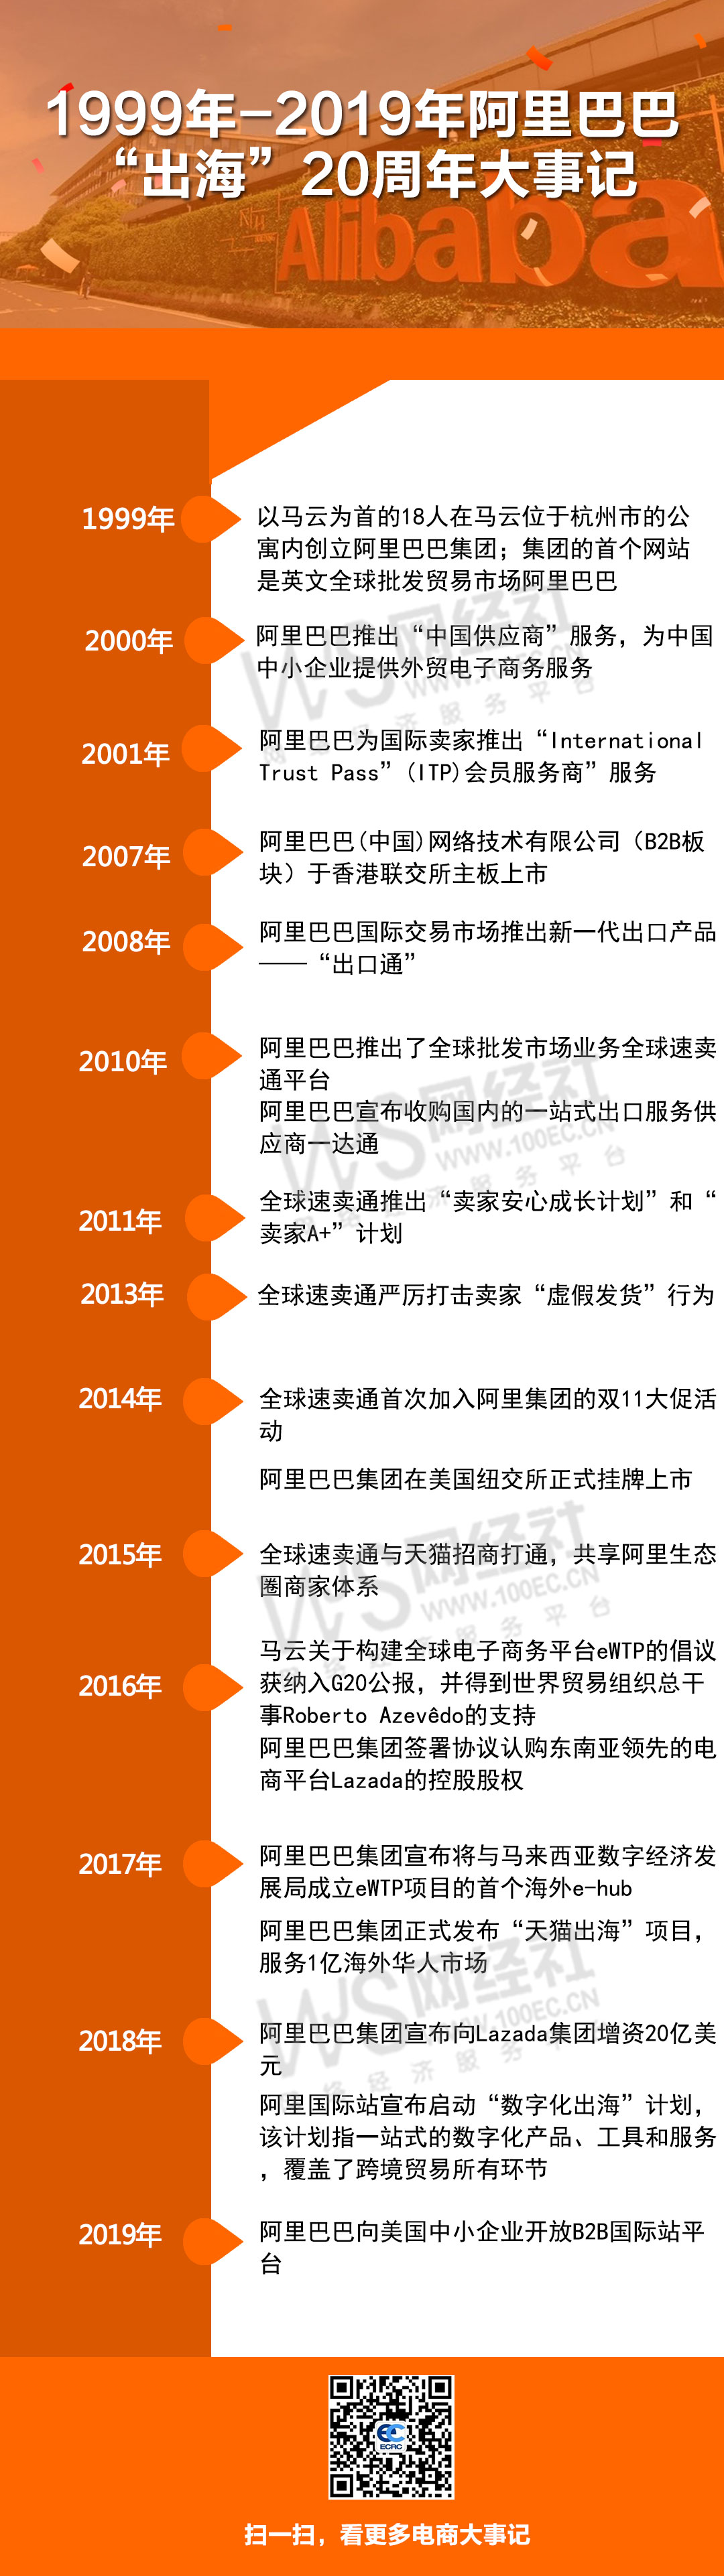 1999-2019阿里出海20周年大事记.jpg